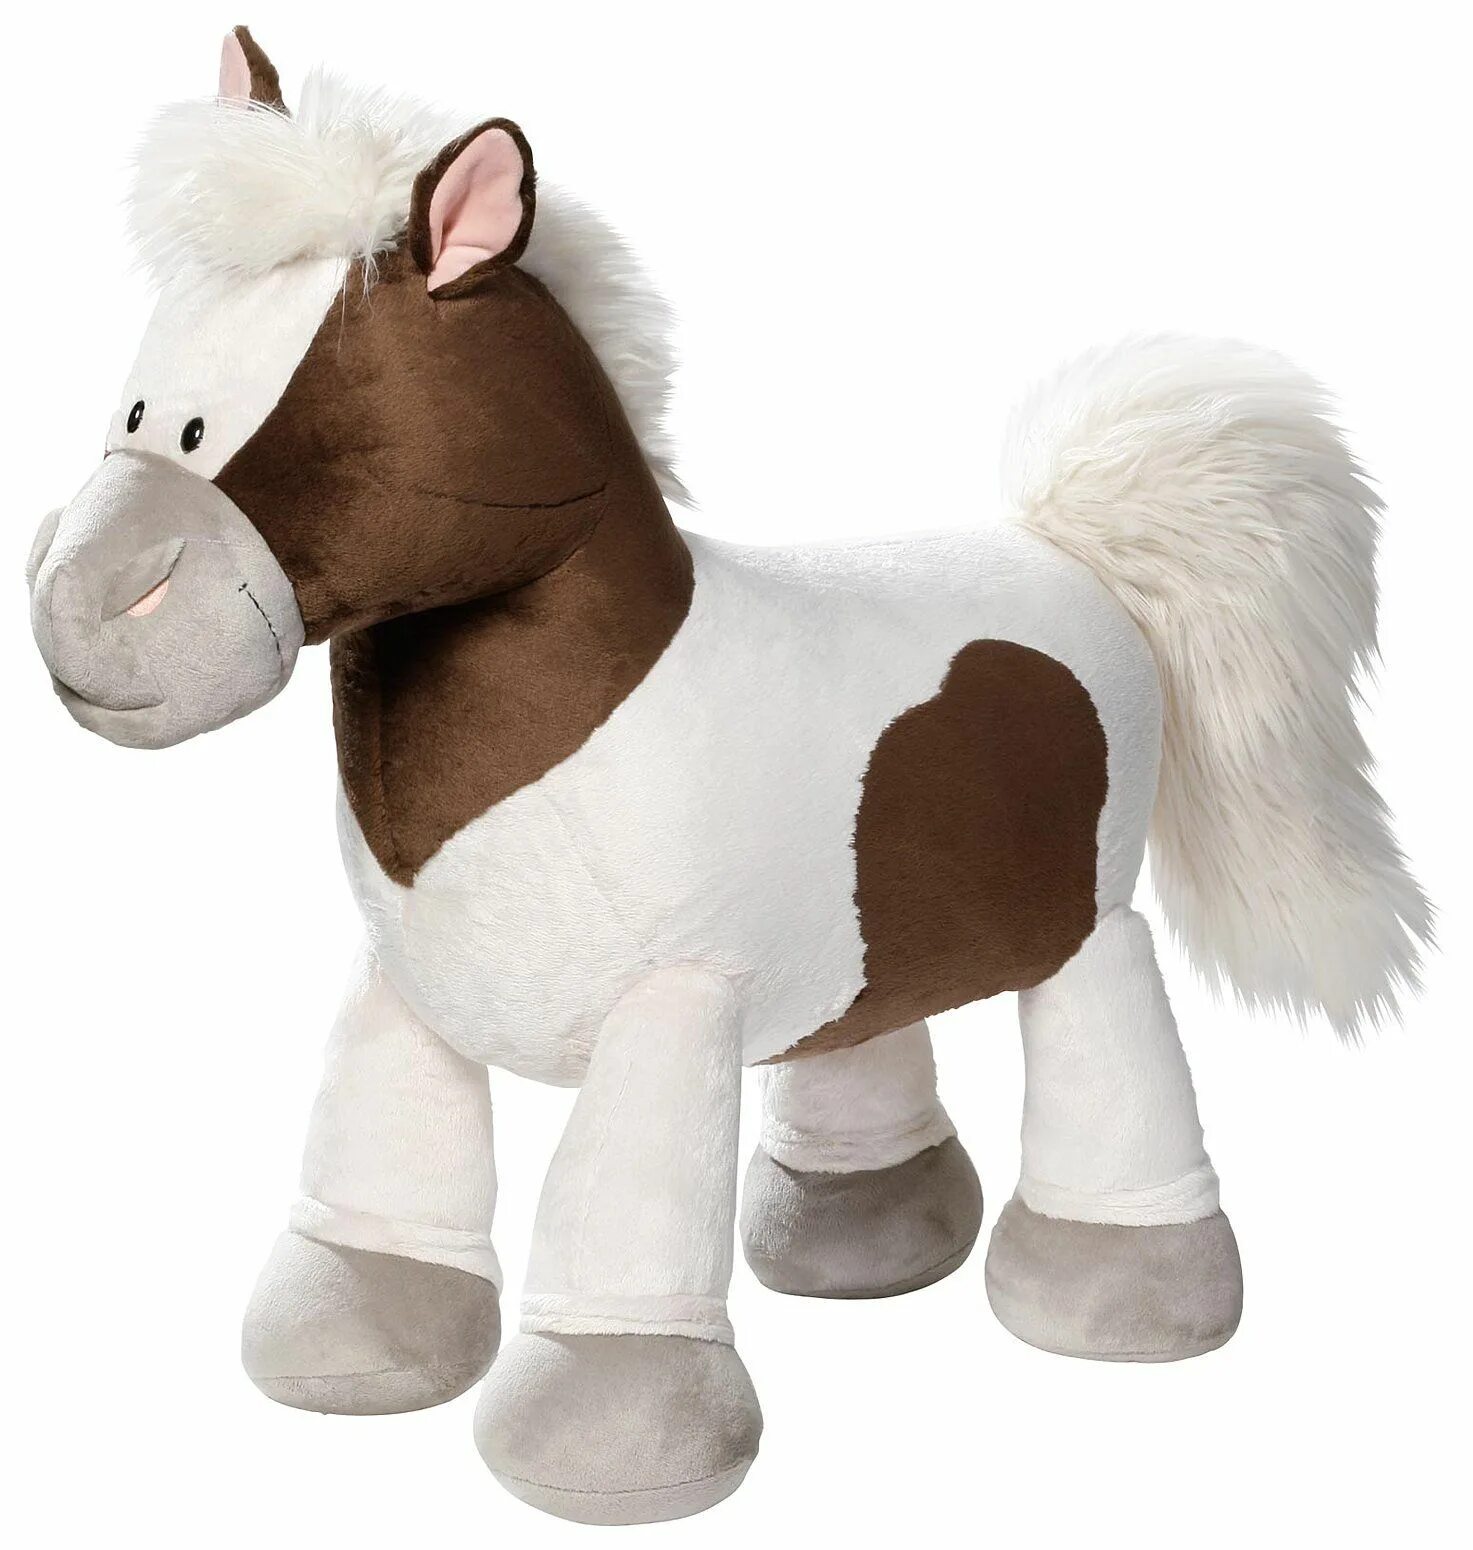 Nici мягкая игрушка лошадка Даймонд. Nici пони Пунита. Мягкая игрушка nici лошадка Даймонд сидячая 25см. Лошадка "вельвет", сидячая, коричневая, 25 см.